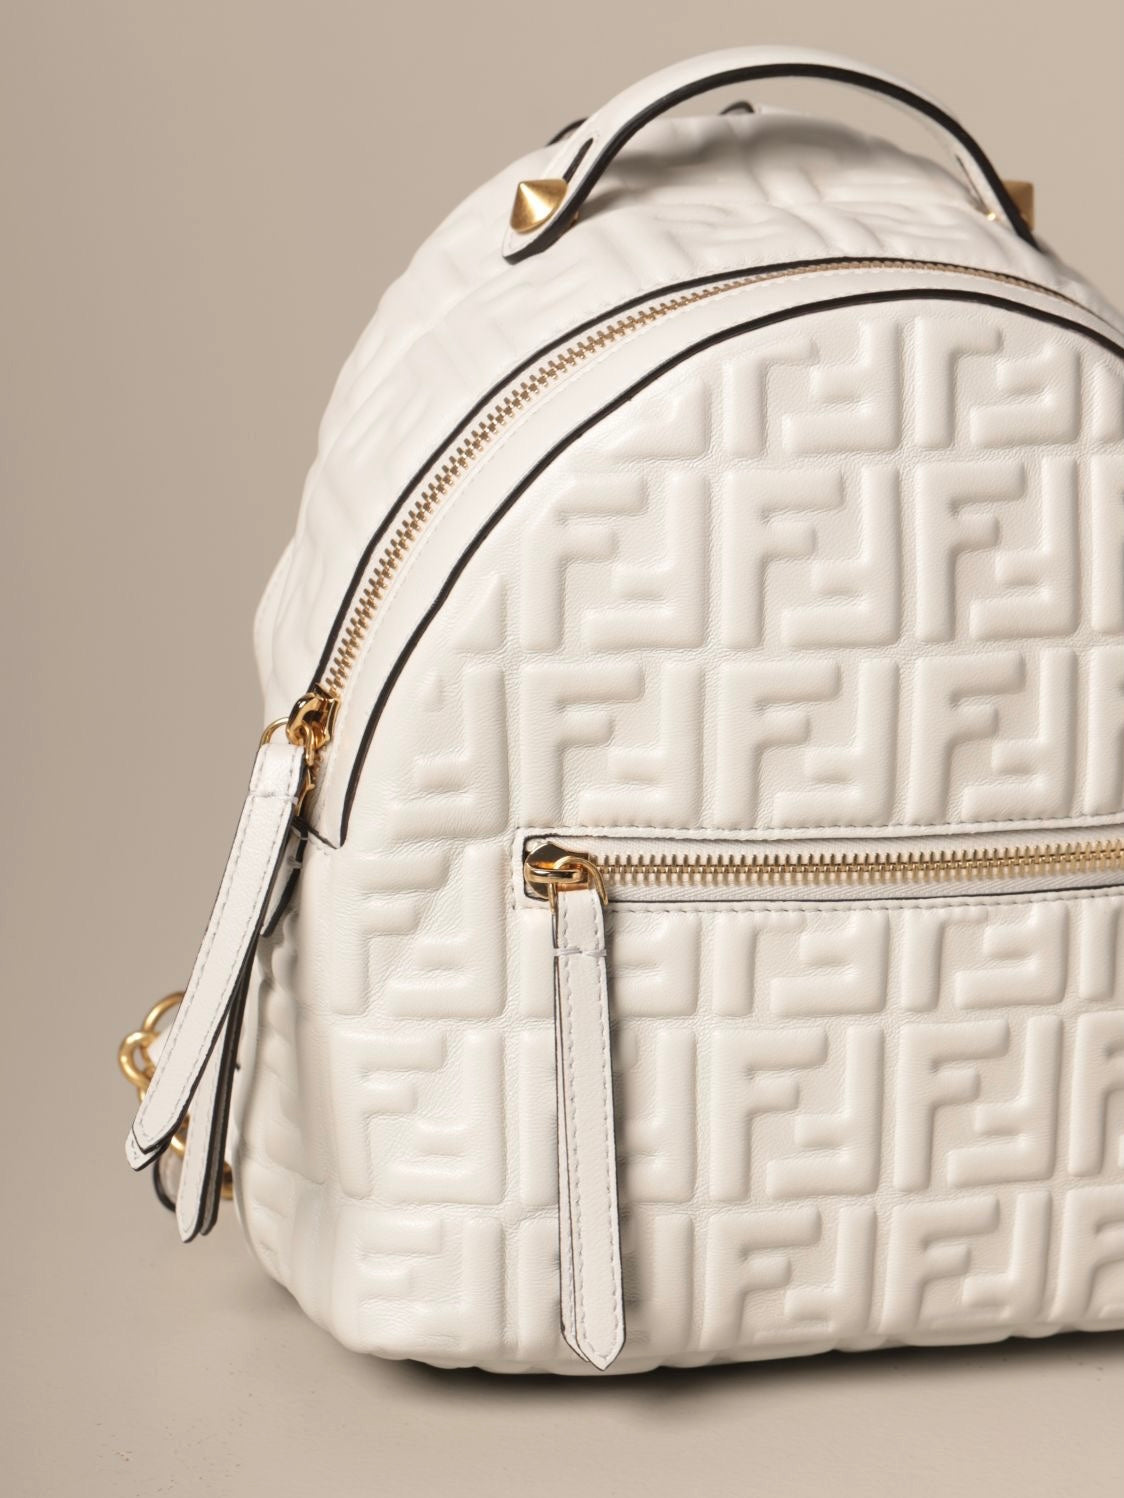 Designer Leather Pure White Fendi Material for Custom Handmade Upholstery